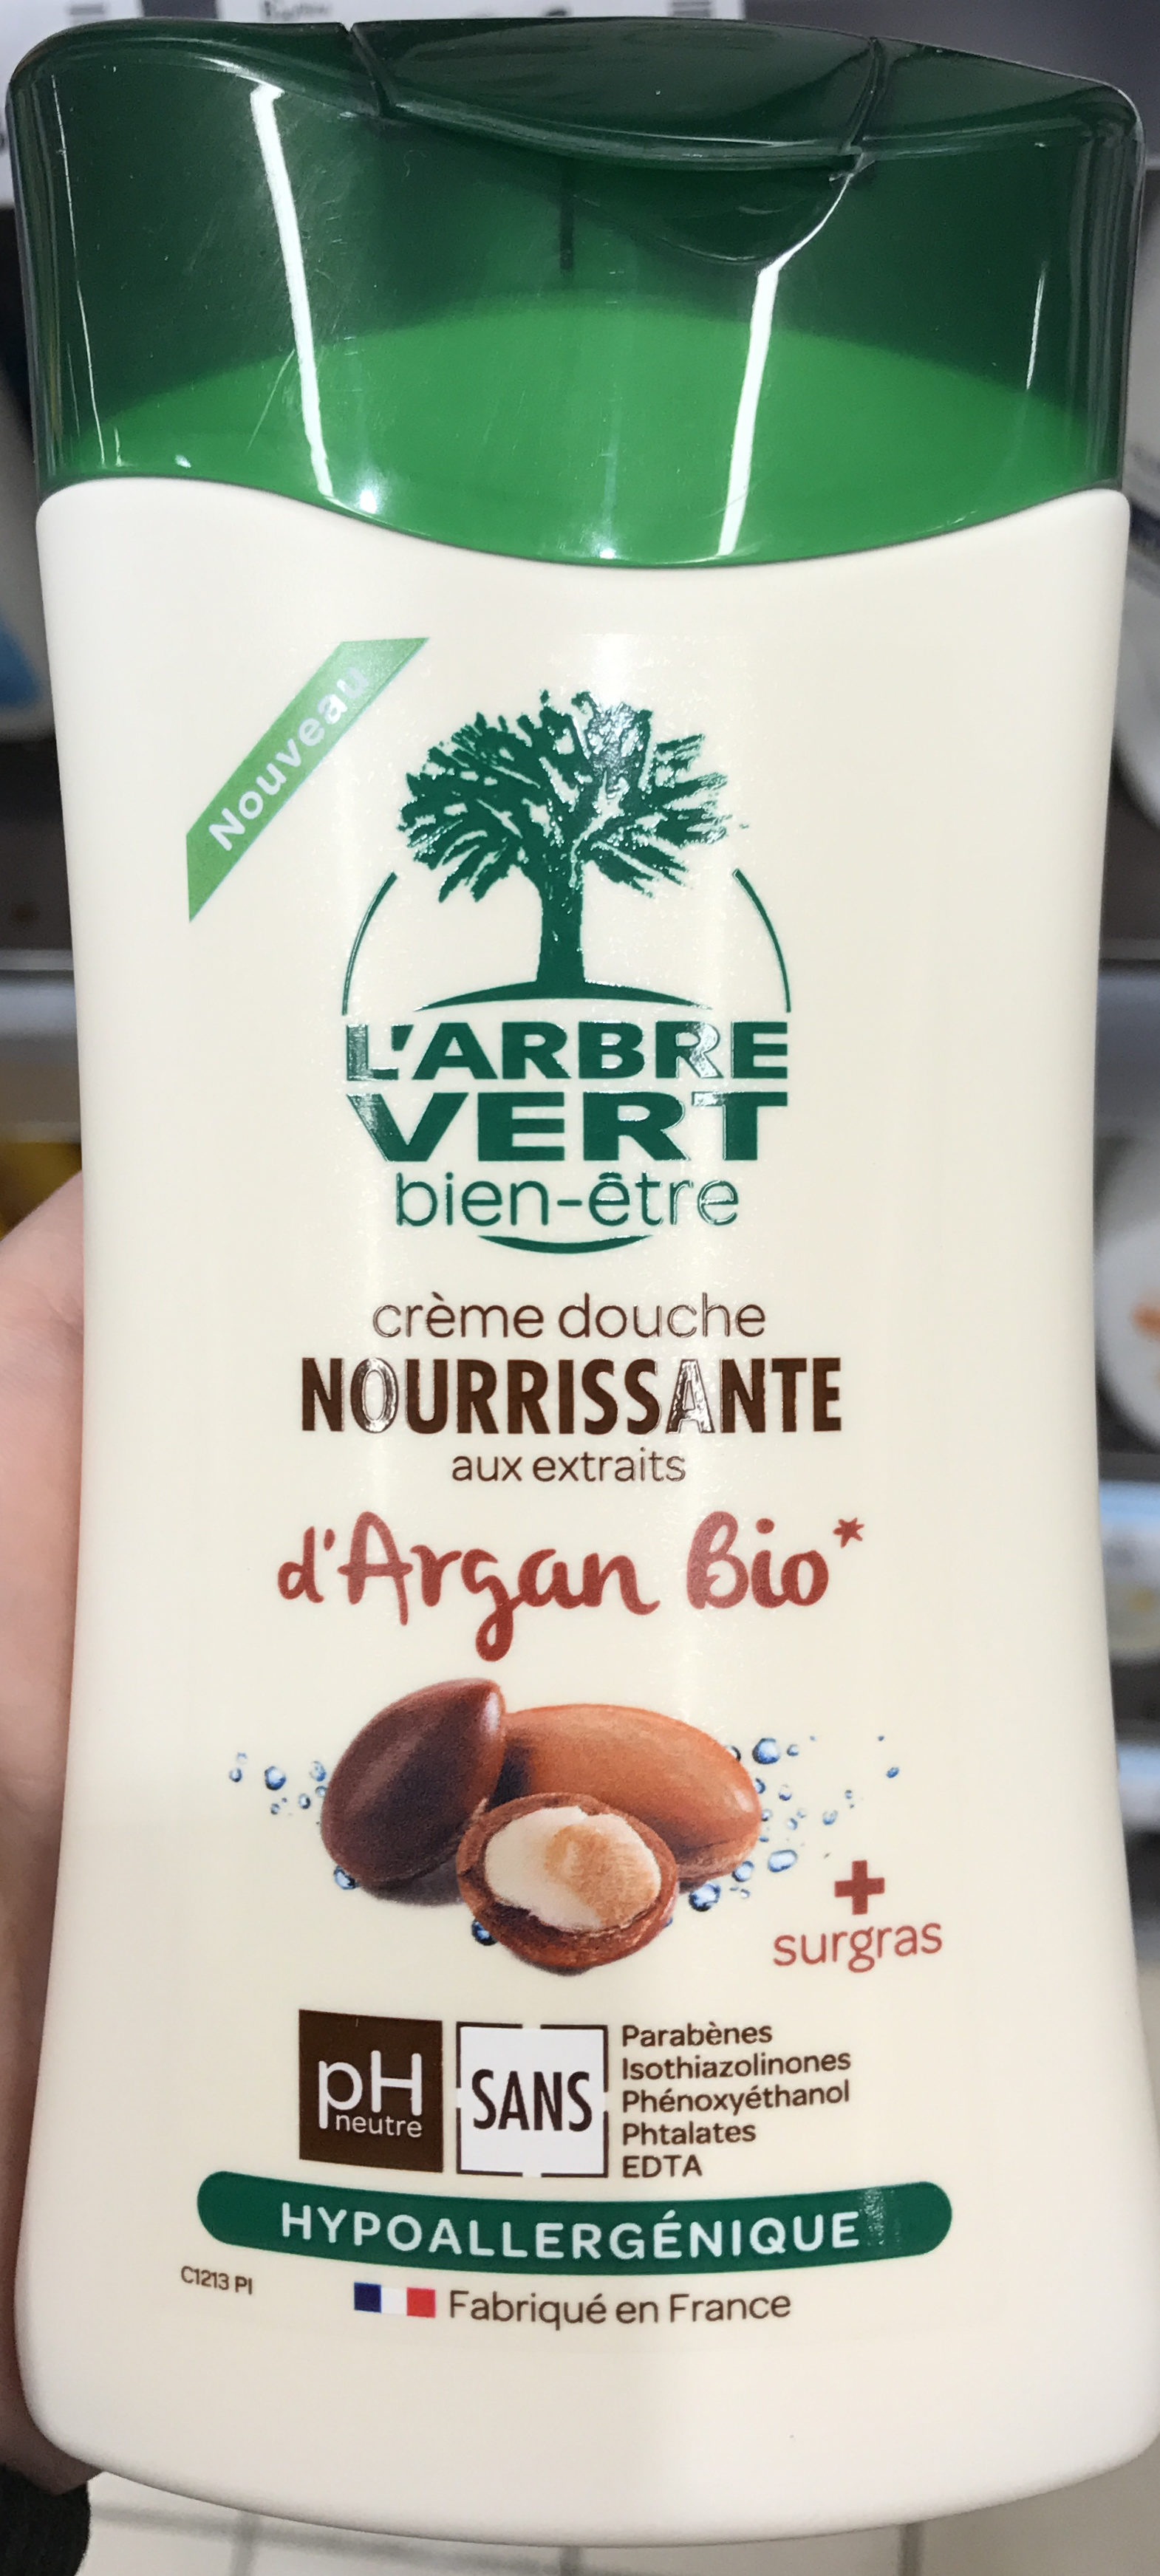 Crème douche Nourissante aux extraits d'Argan bio - Tuote - fr